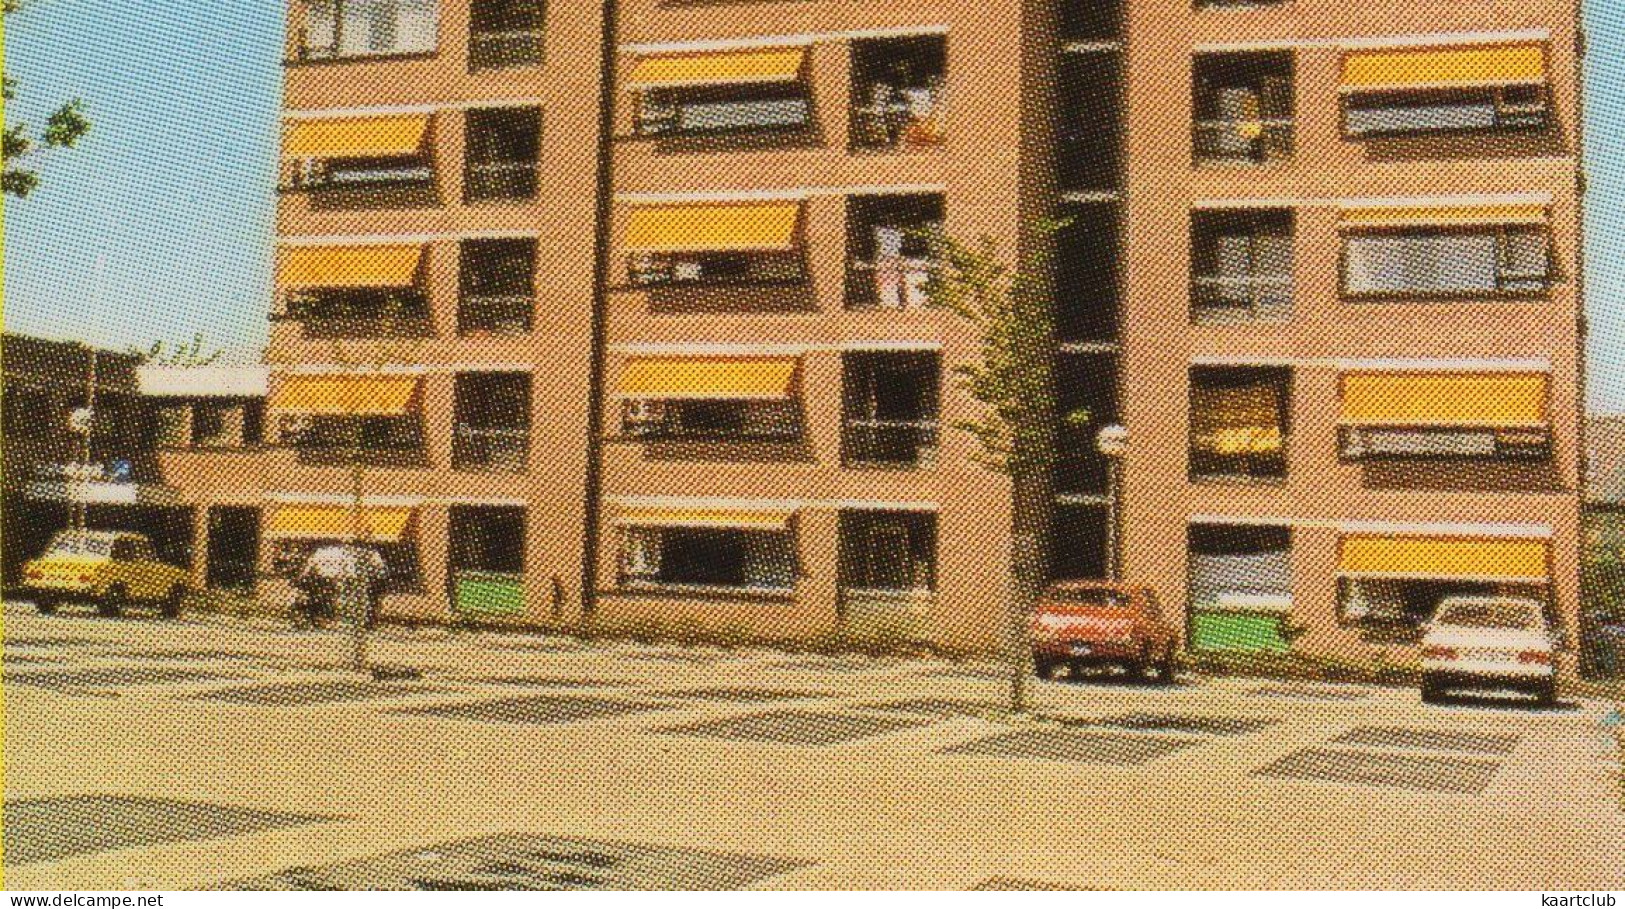 Groeten Uit Noordwijkerhout: DAF 55, TOYOTA CARINA '73 - Appartementengebouw, Molen, Kerk - (Holland) - Passenger Cars